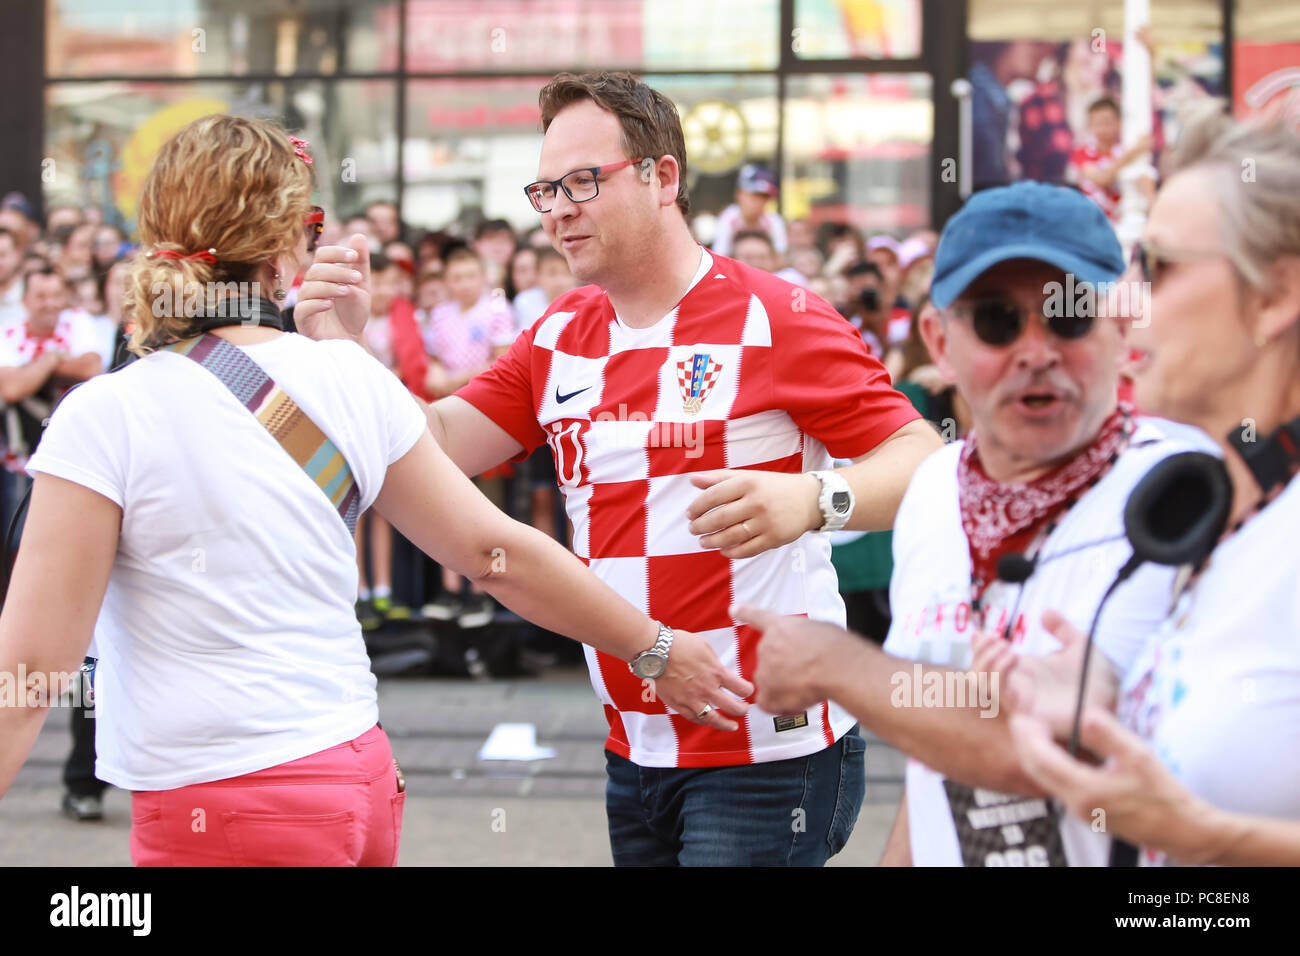 ZAGREB, KROATIEN - 16. JULI 2018: Kroatien National Football Team willkommen zu Hause feiern. HRT Journalist und TV-Moderator Frano Ridjan kommen zur Zeremonie. Stockfoto